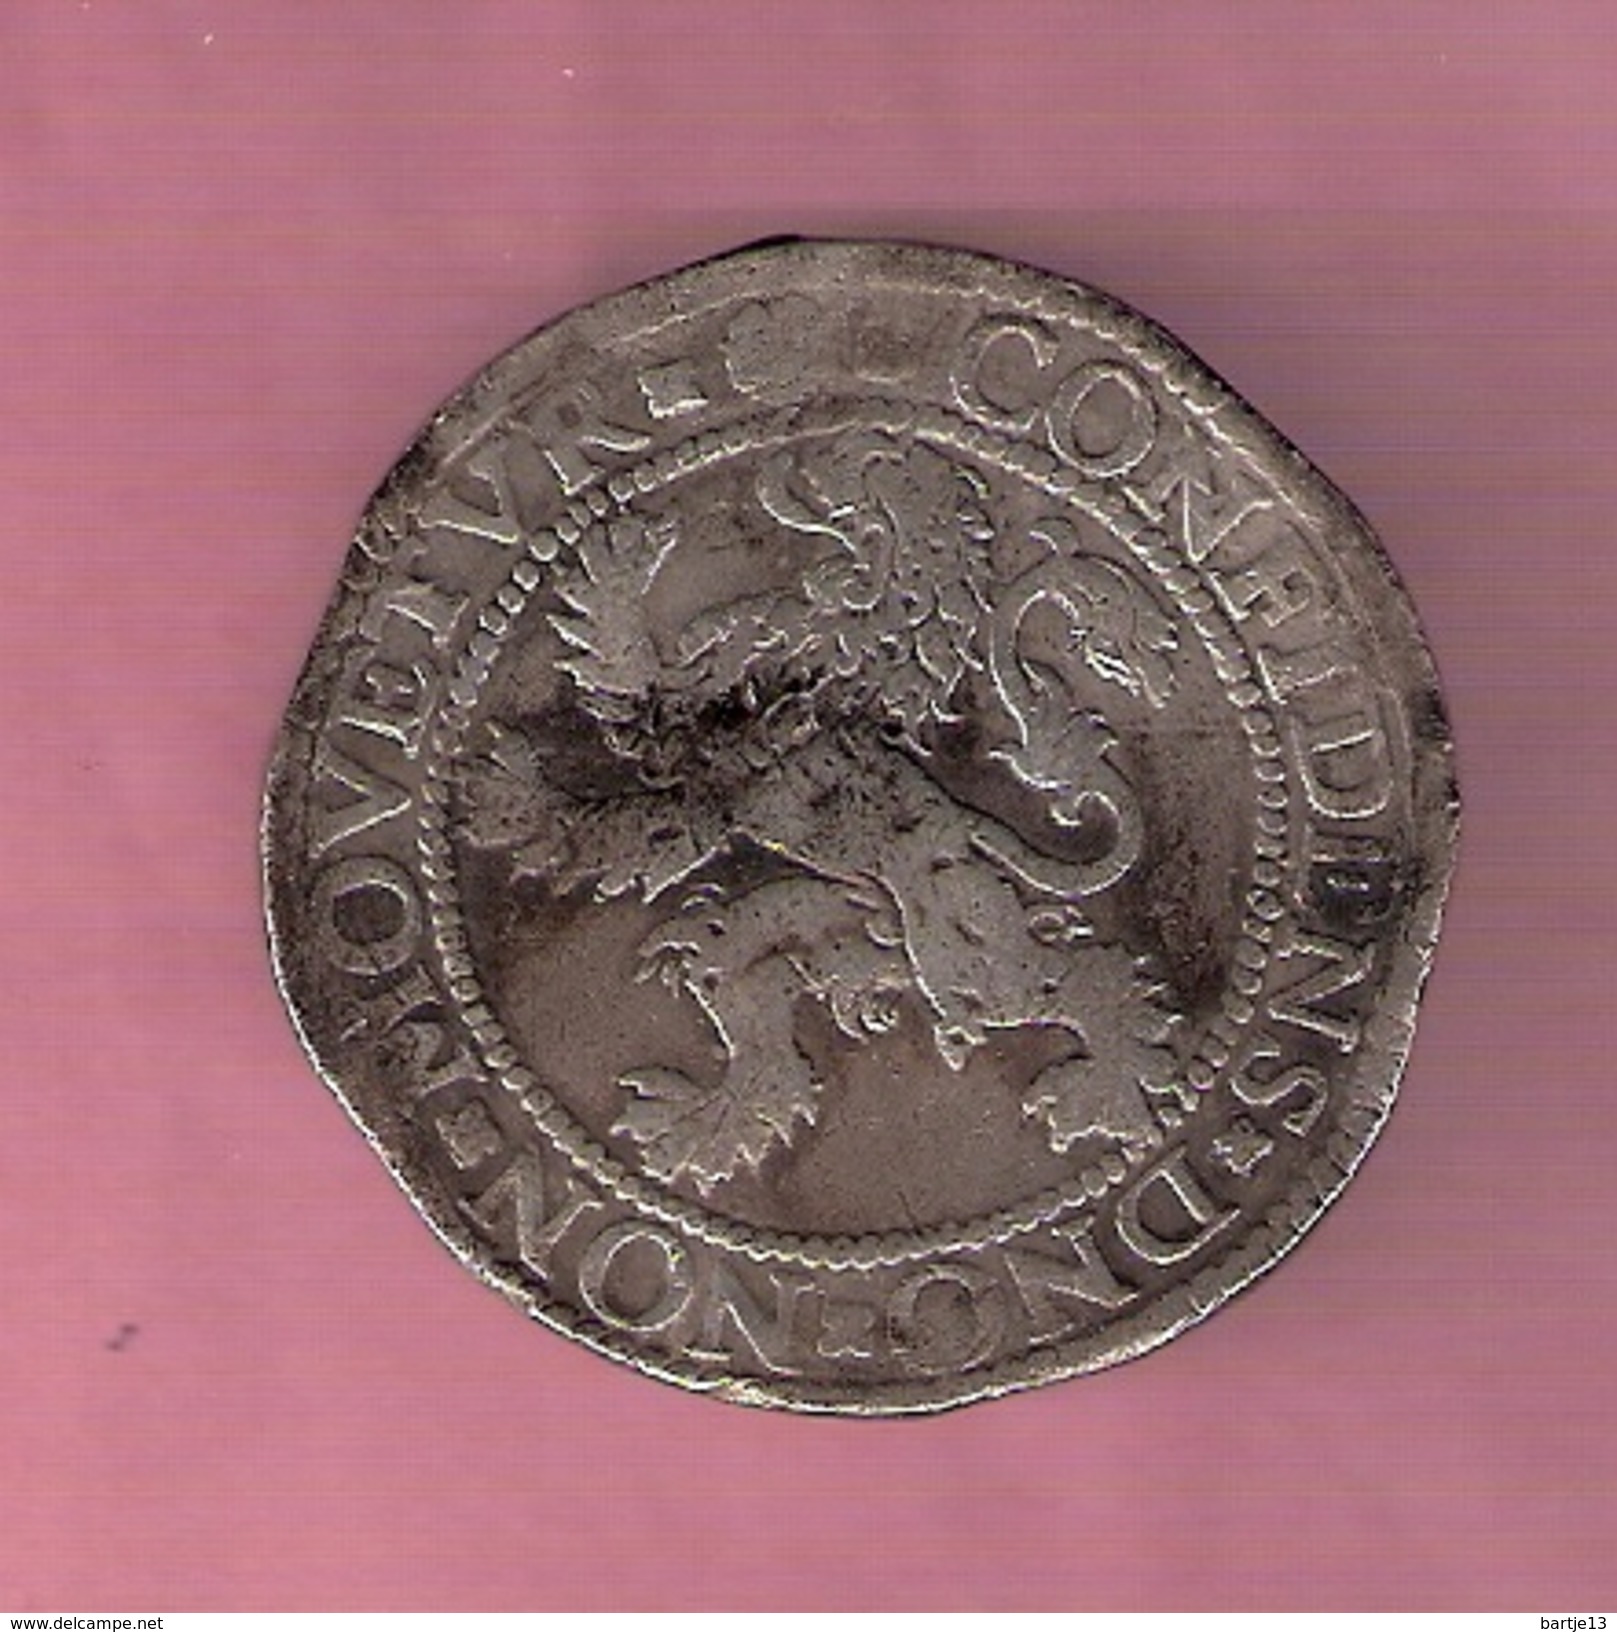 HOLLAND LEEUWENDAALDER (48 STUIVERS) 1576 - Monedas Provinciales